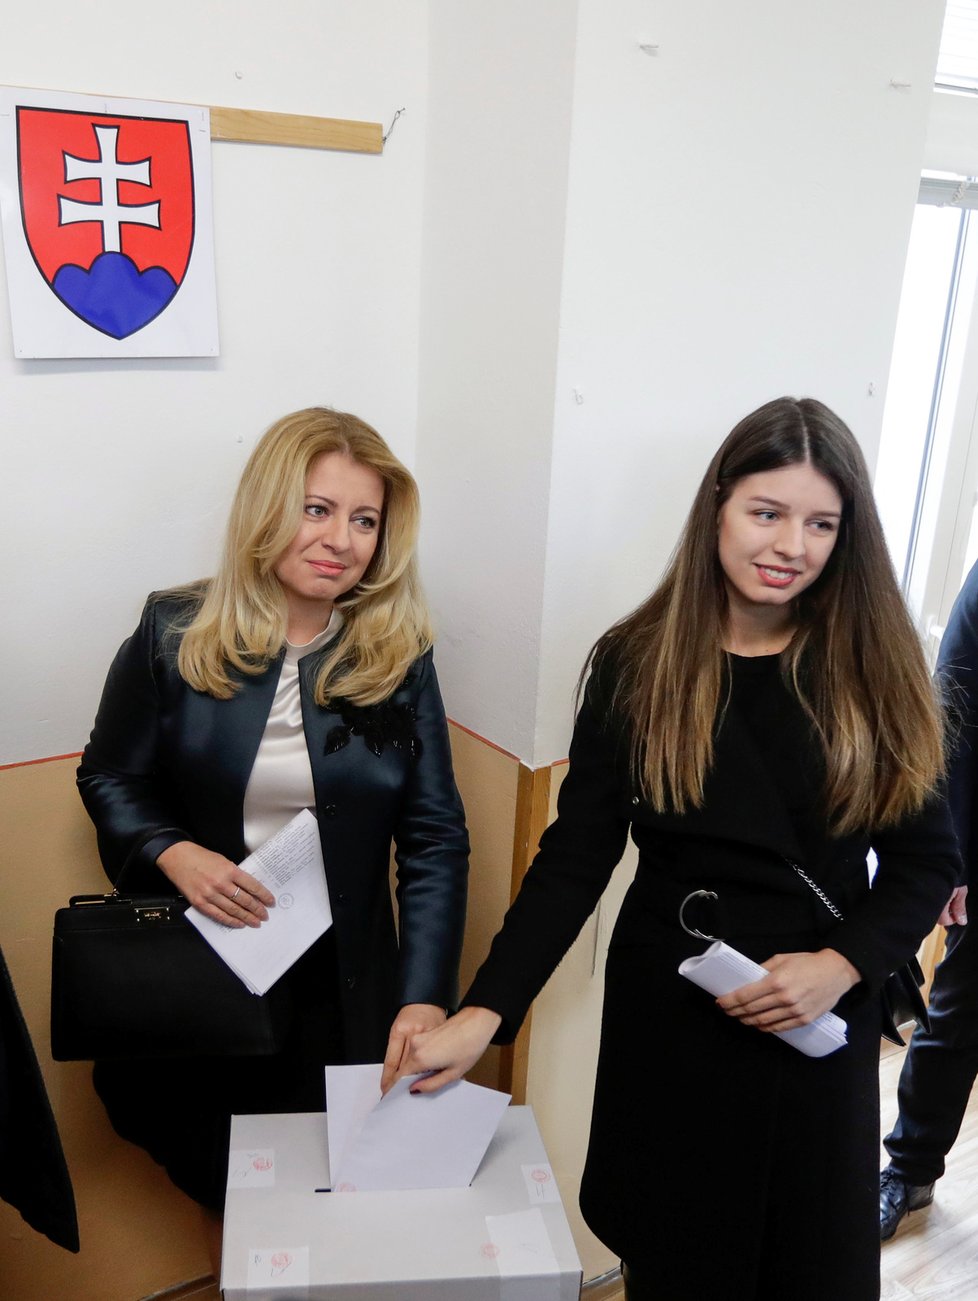 Prezidentka Zuzana Čaputová u slovenských voleb s dcerou Leou (29.2.2020)